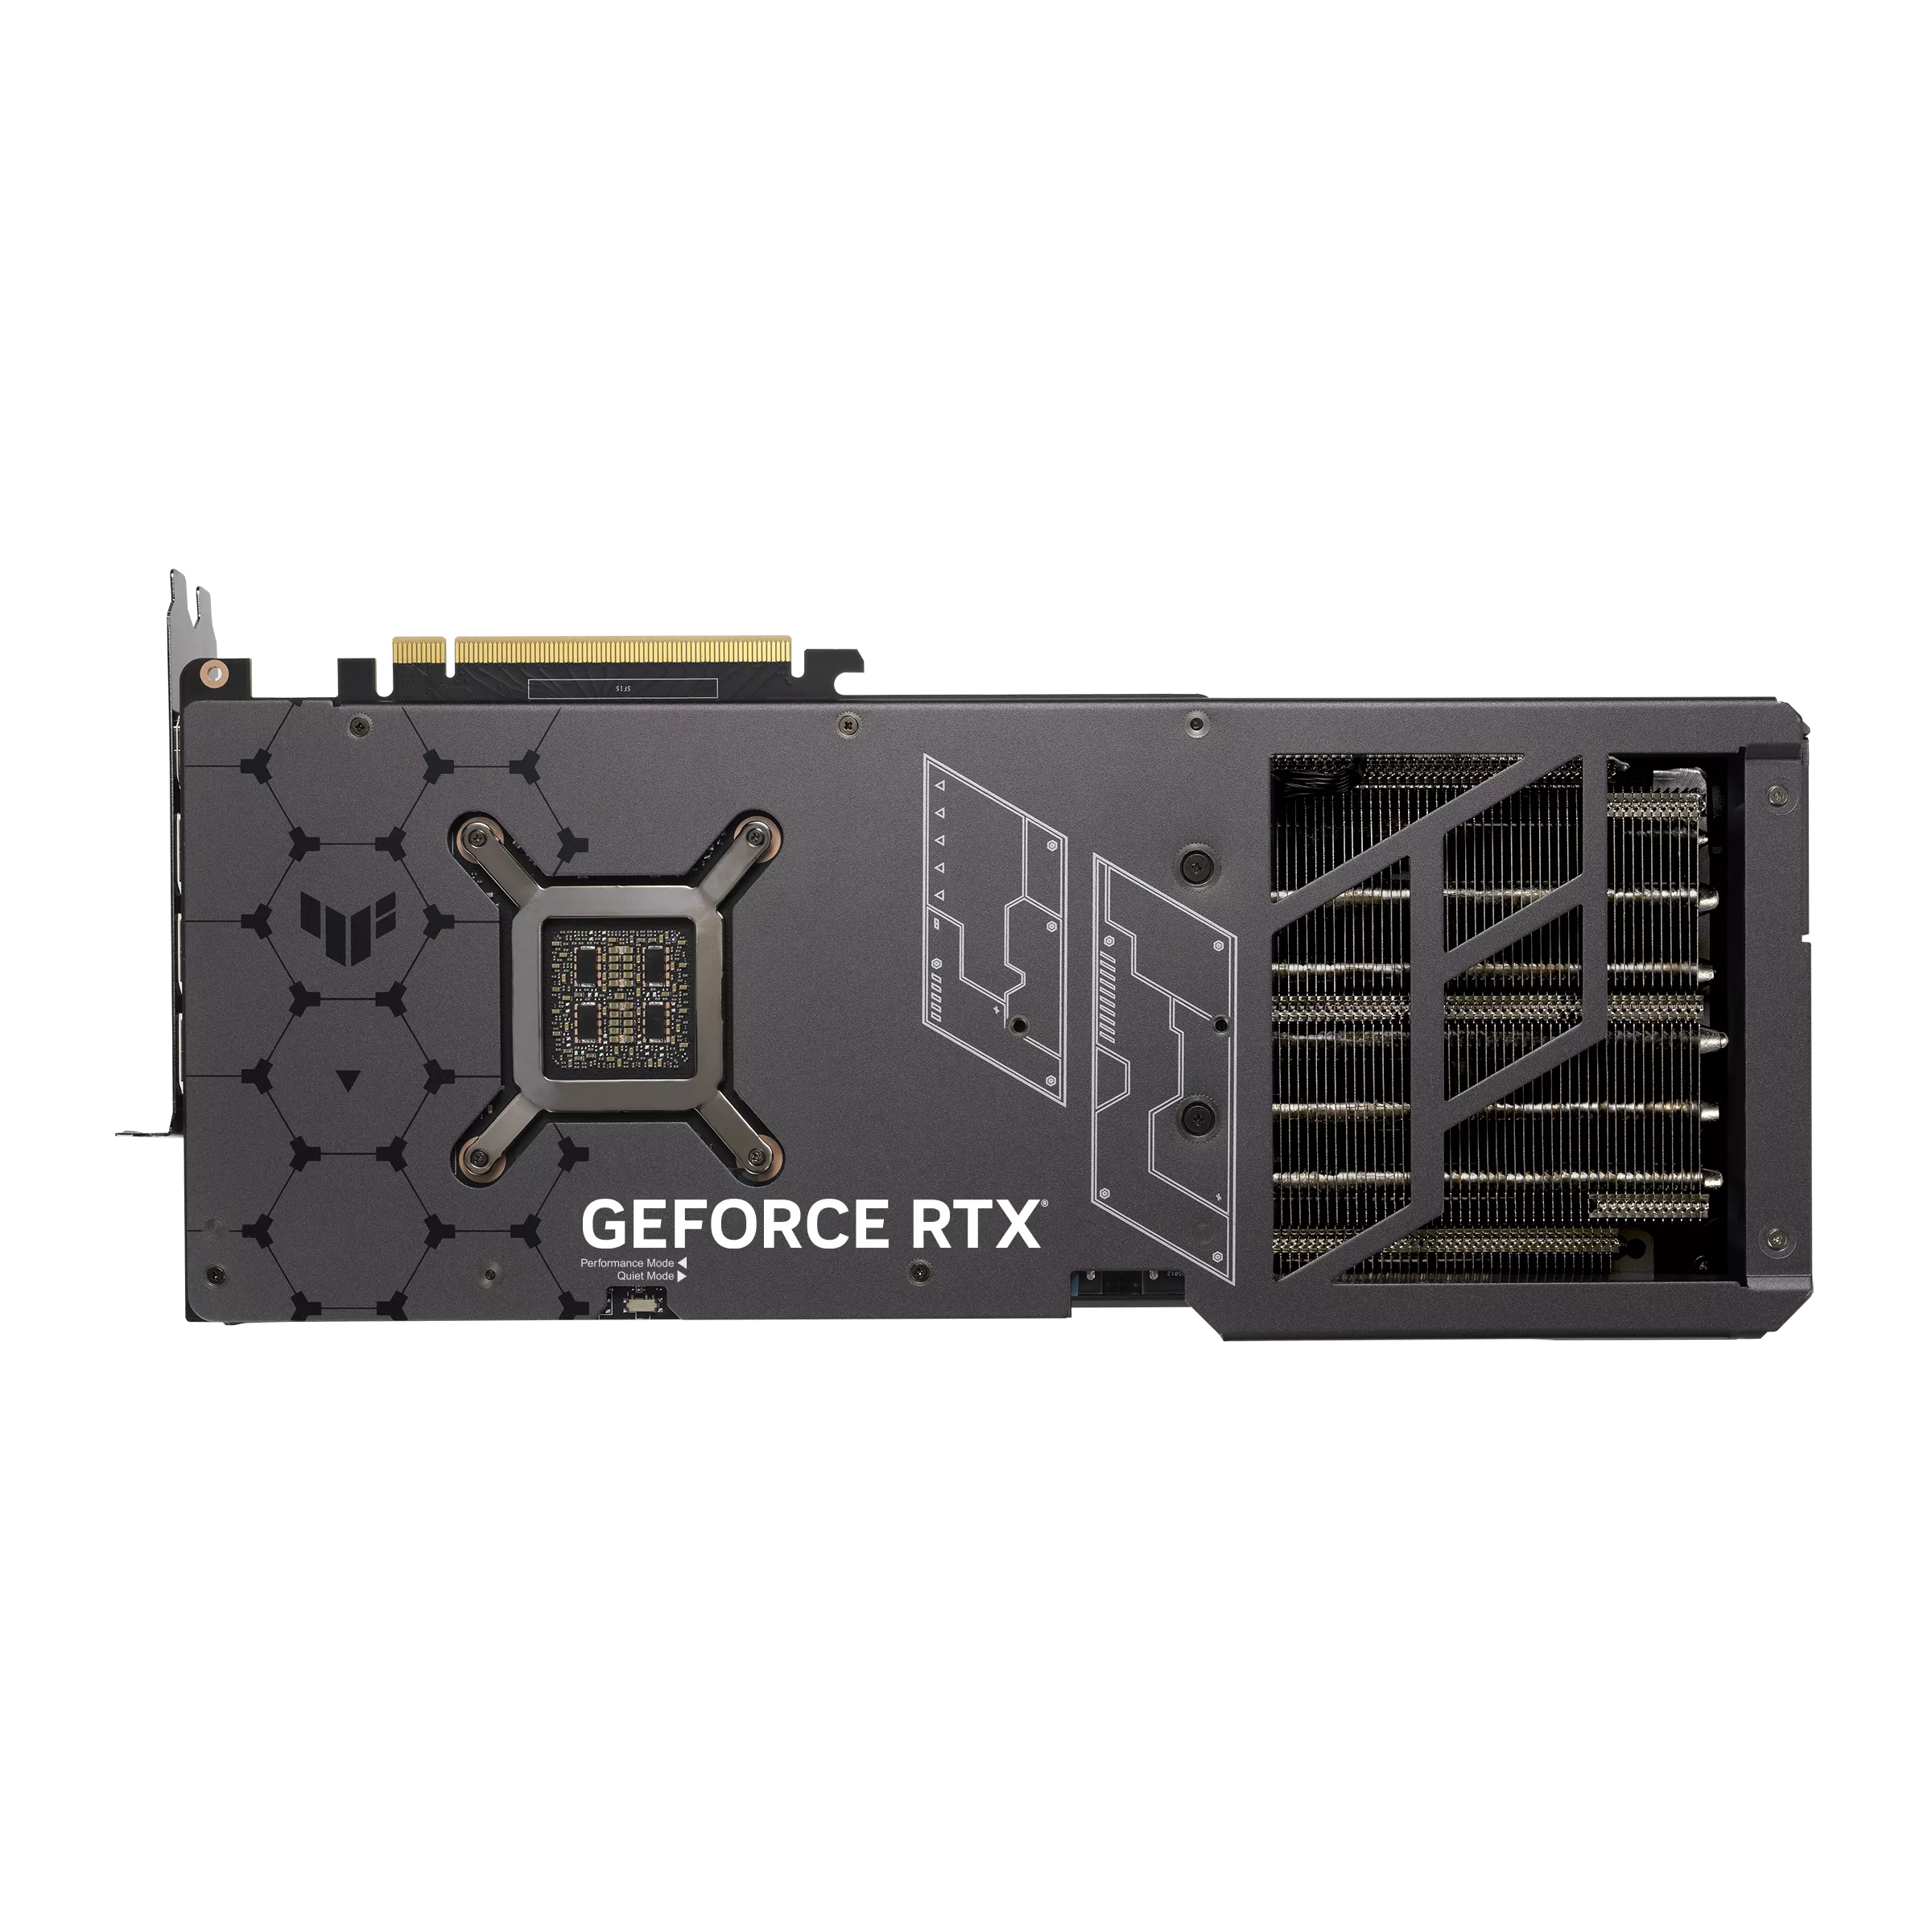 (聖誕限購) ASUS 華碩 TUF Gaming GeForce RTX 4090 24G OC 顯示卡